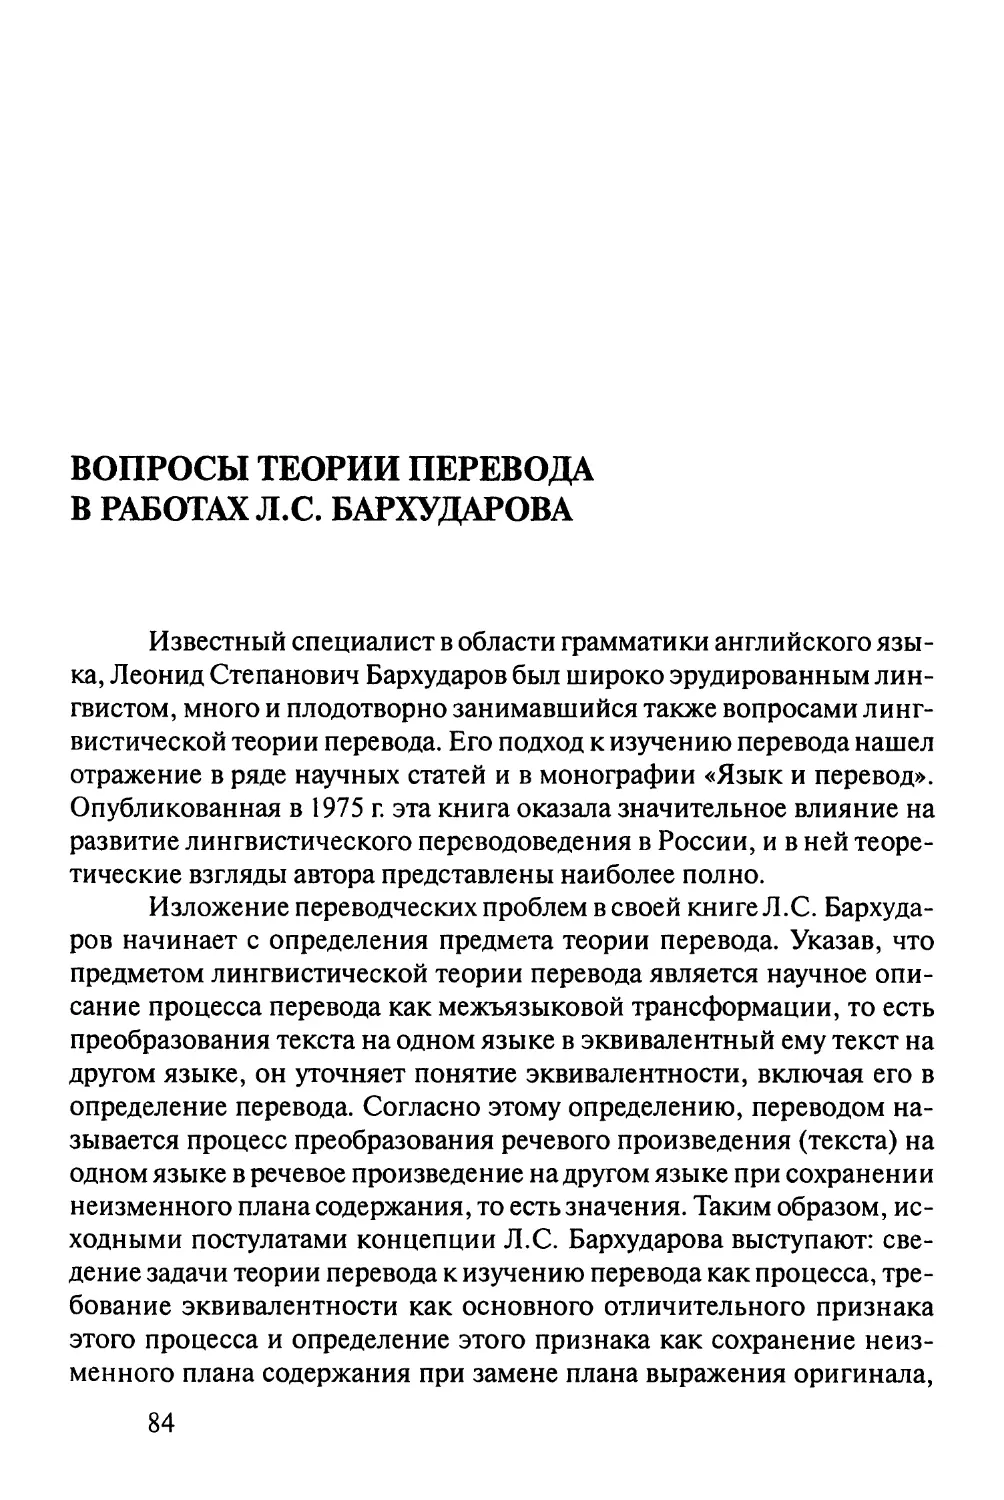 Вопросы теории перевода в работах Л.С.Бархударова